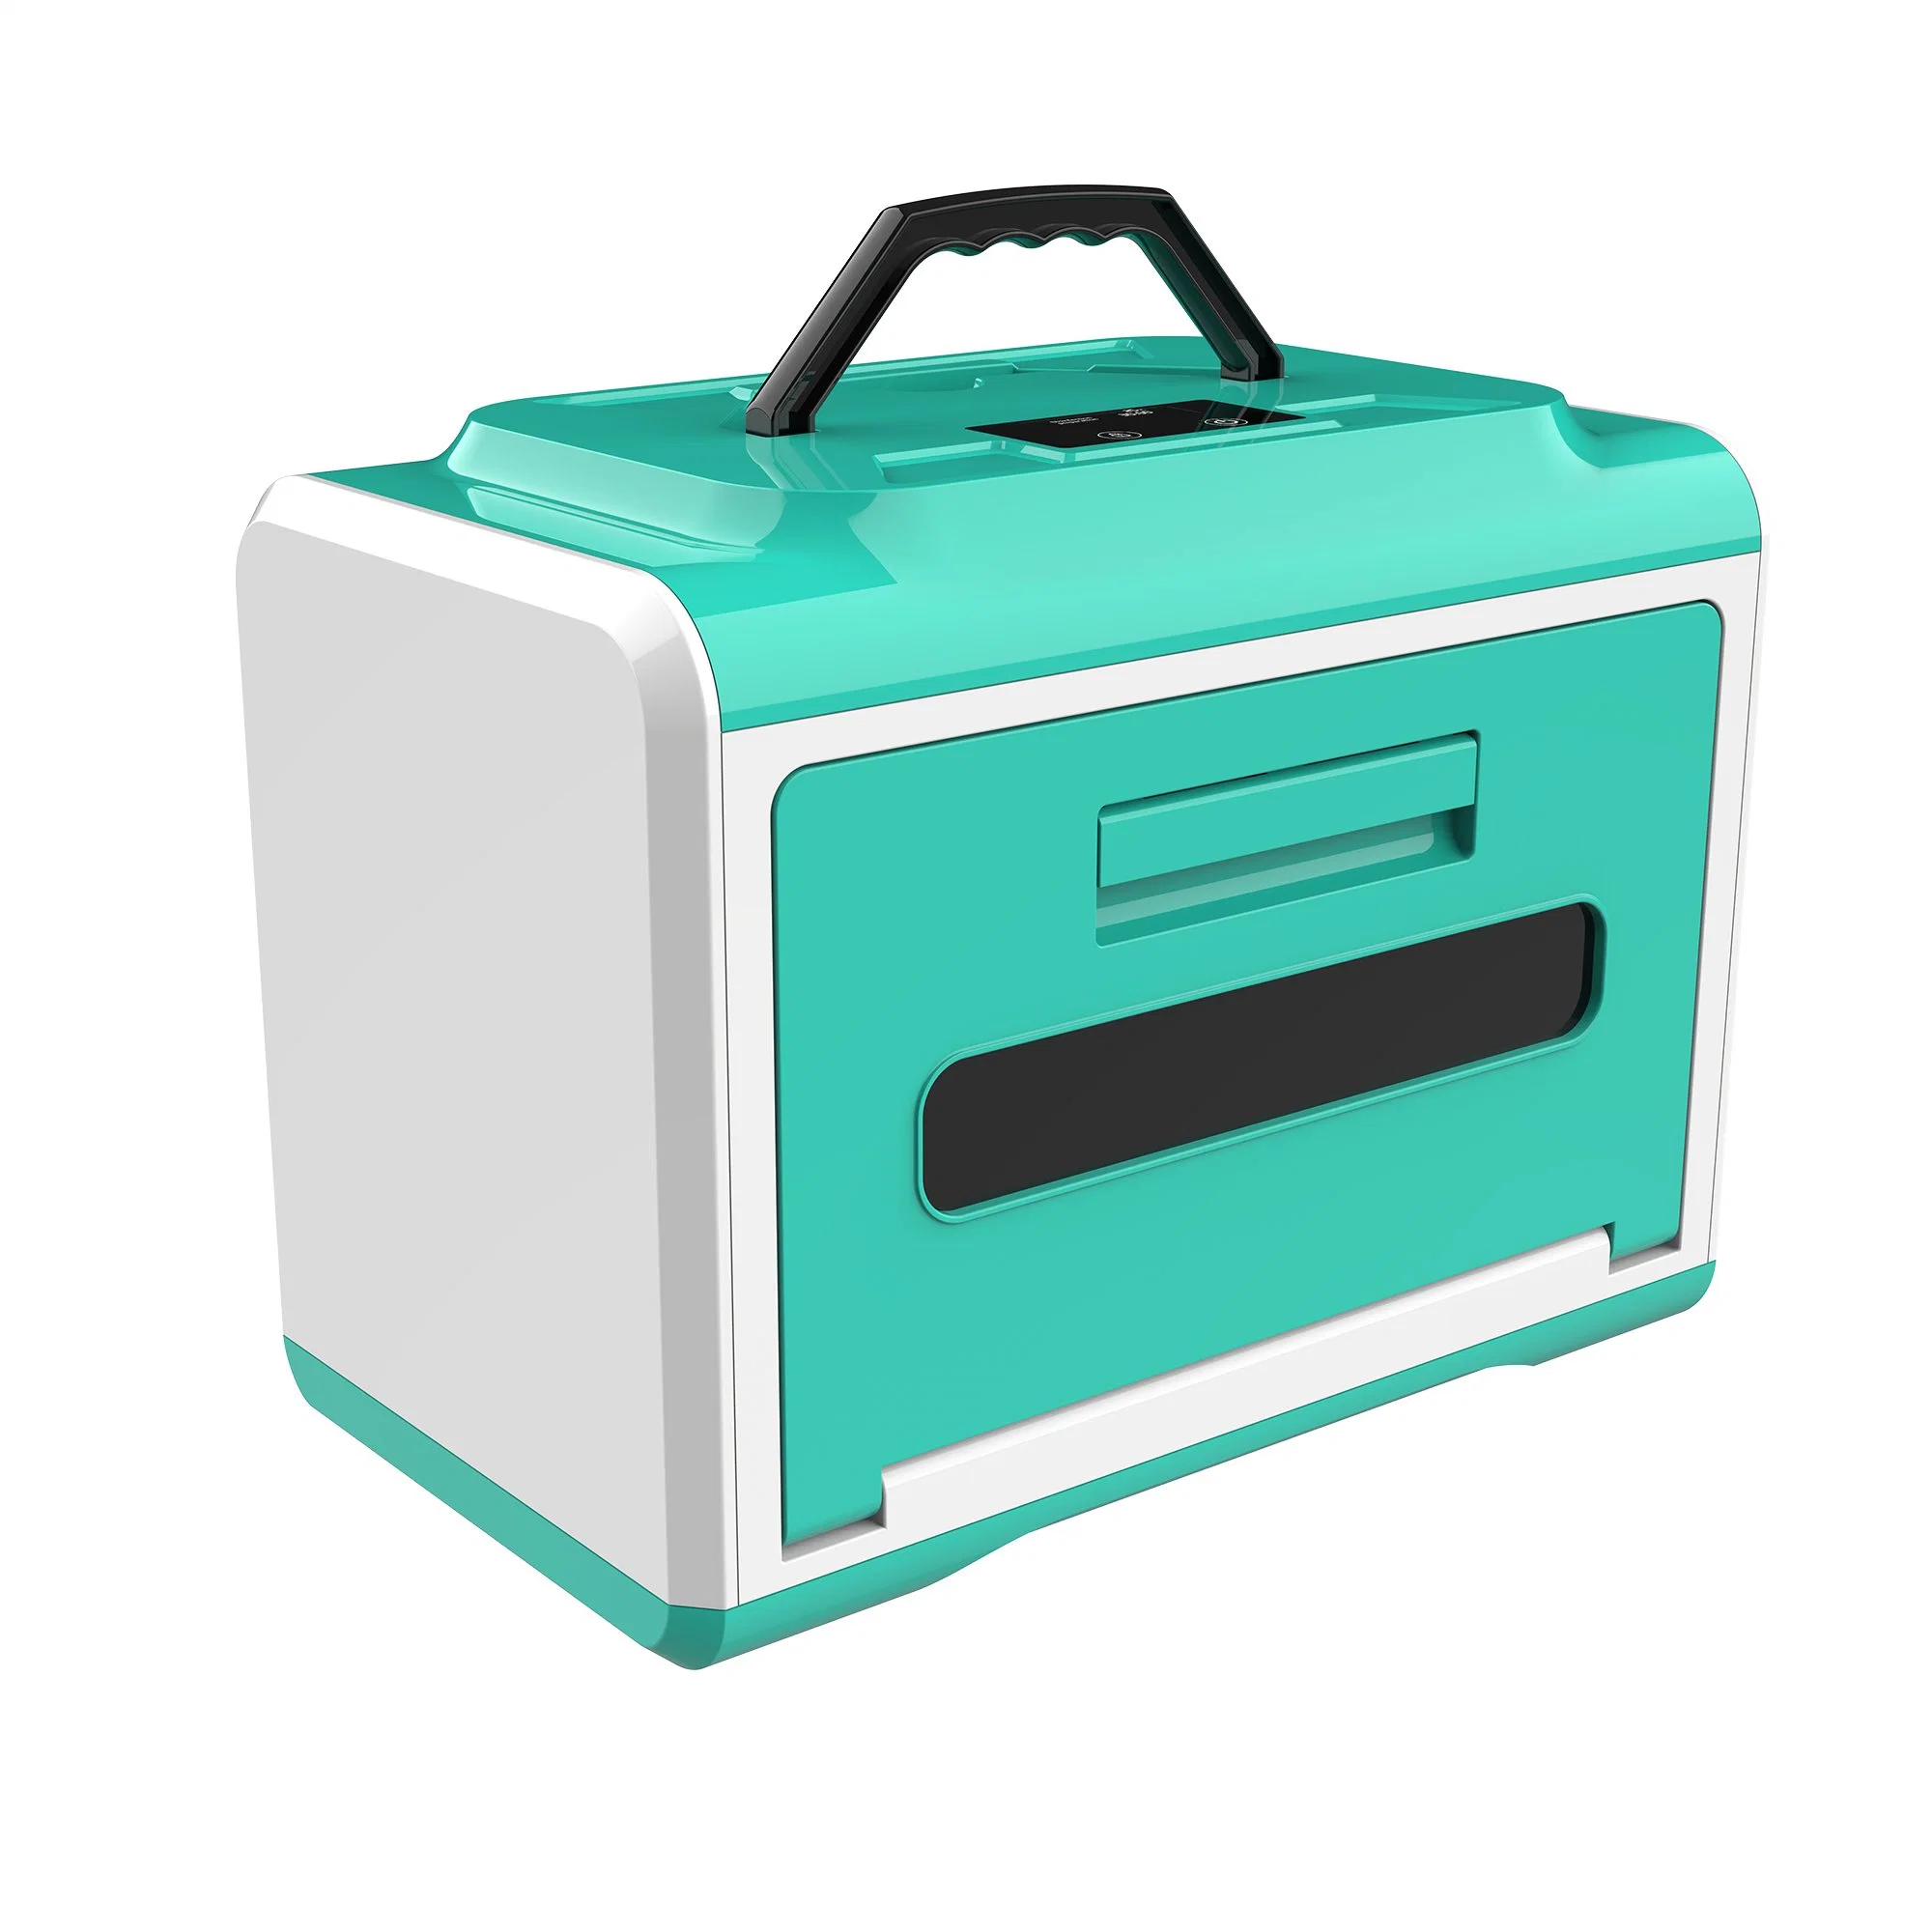 La nueva caja de Esterilización Médica es adecuado para los hospitales, escuelas y hogares y otros lugares